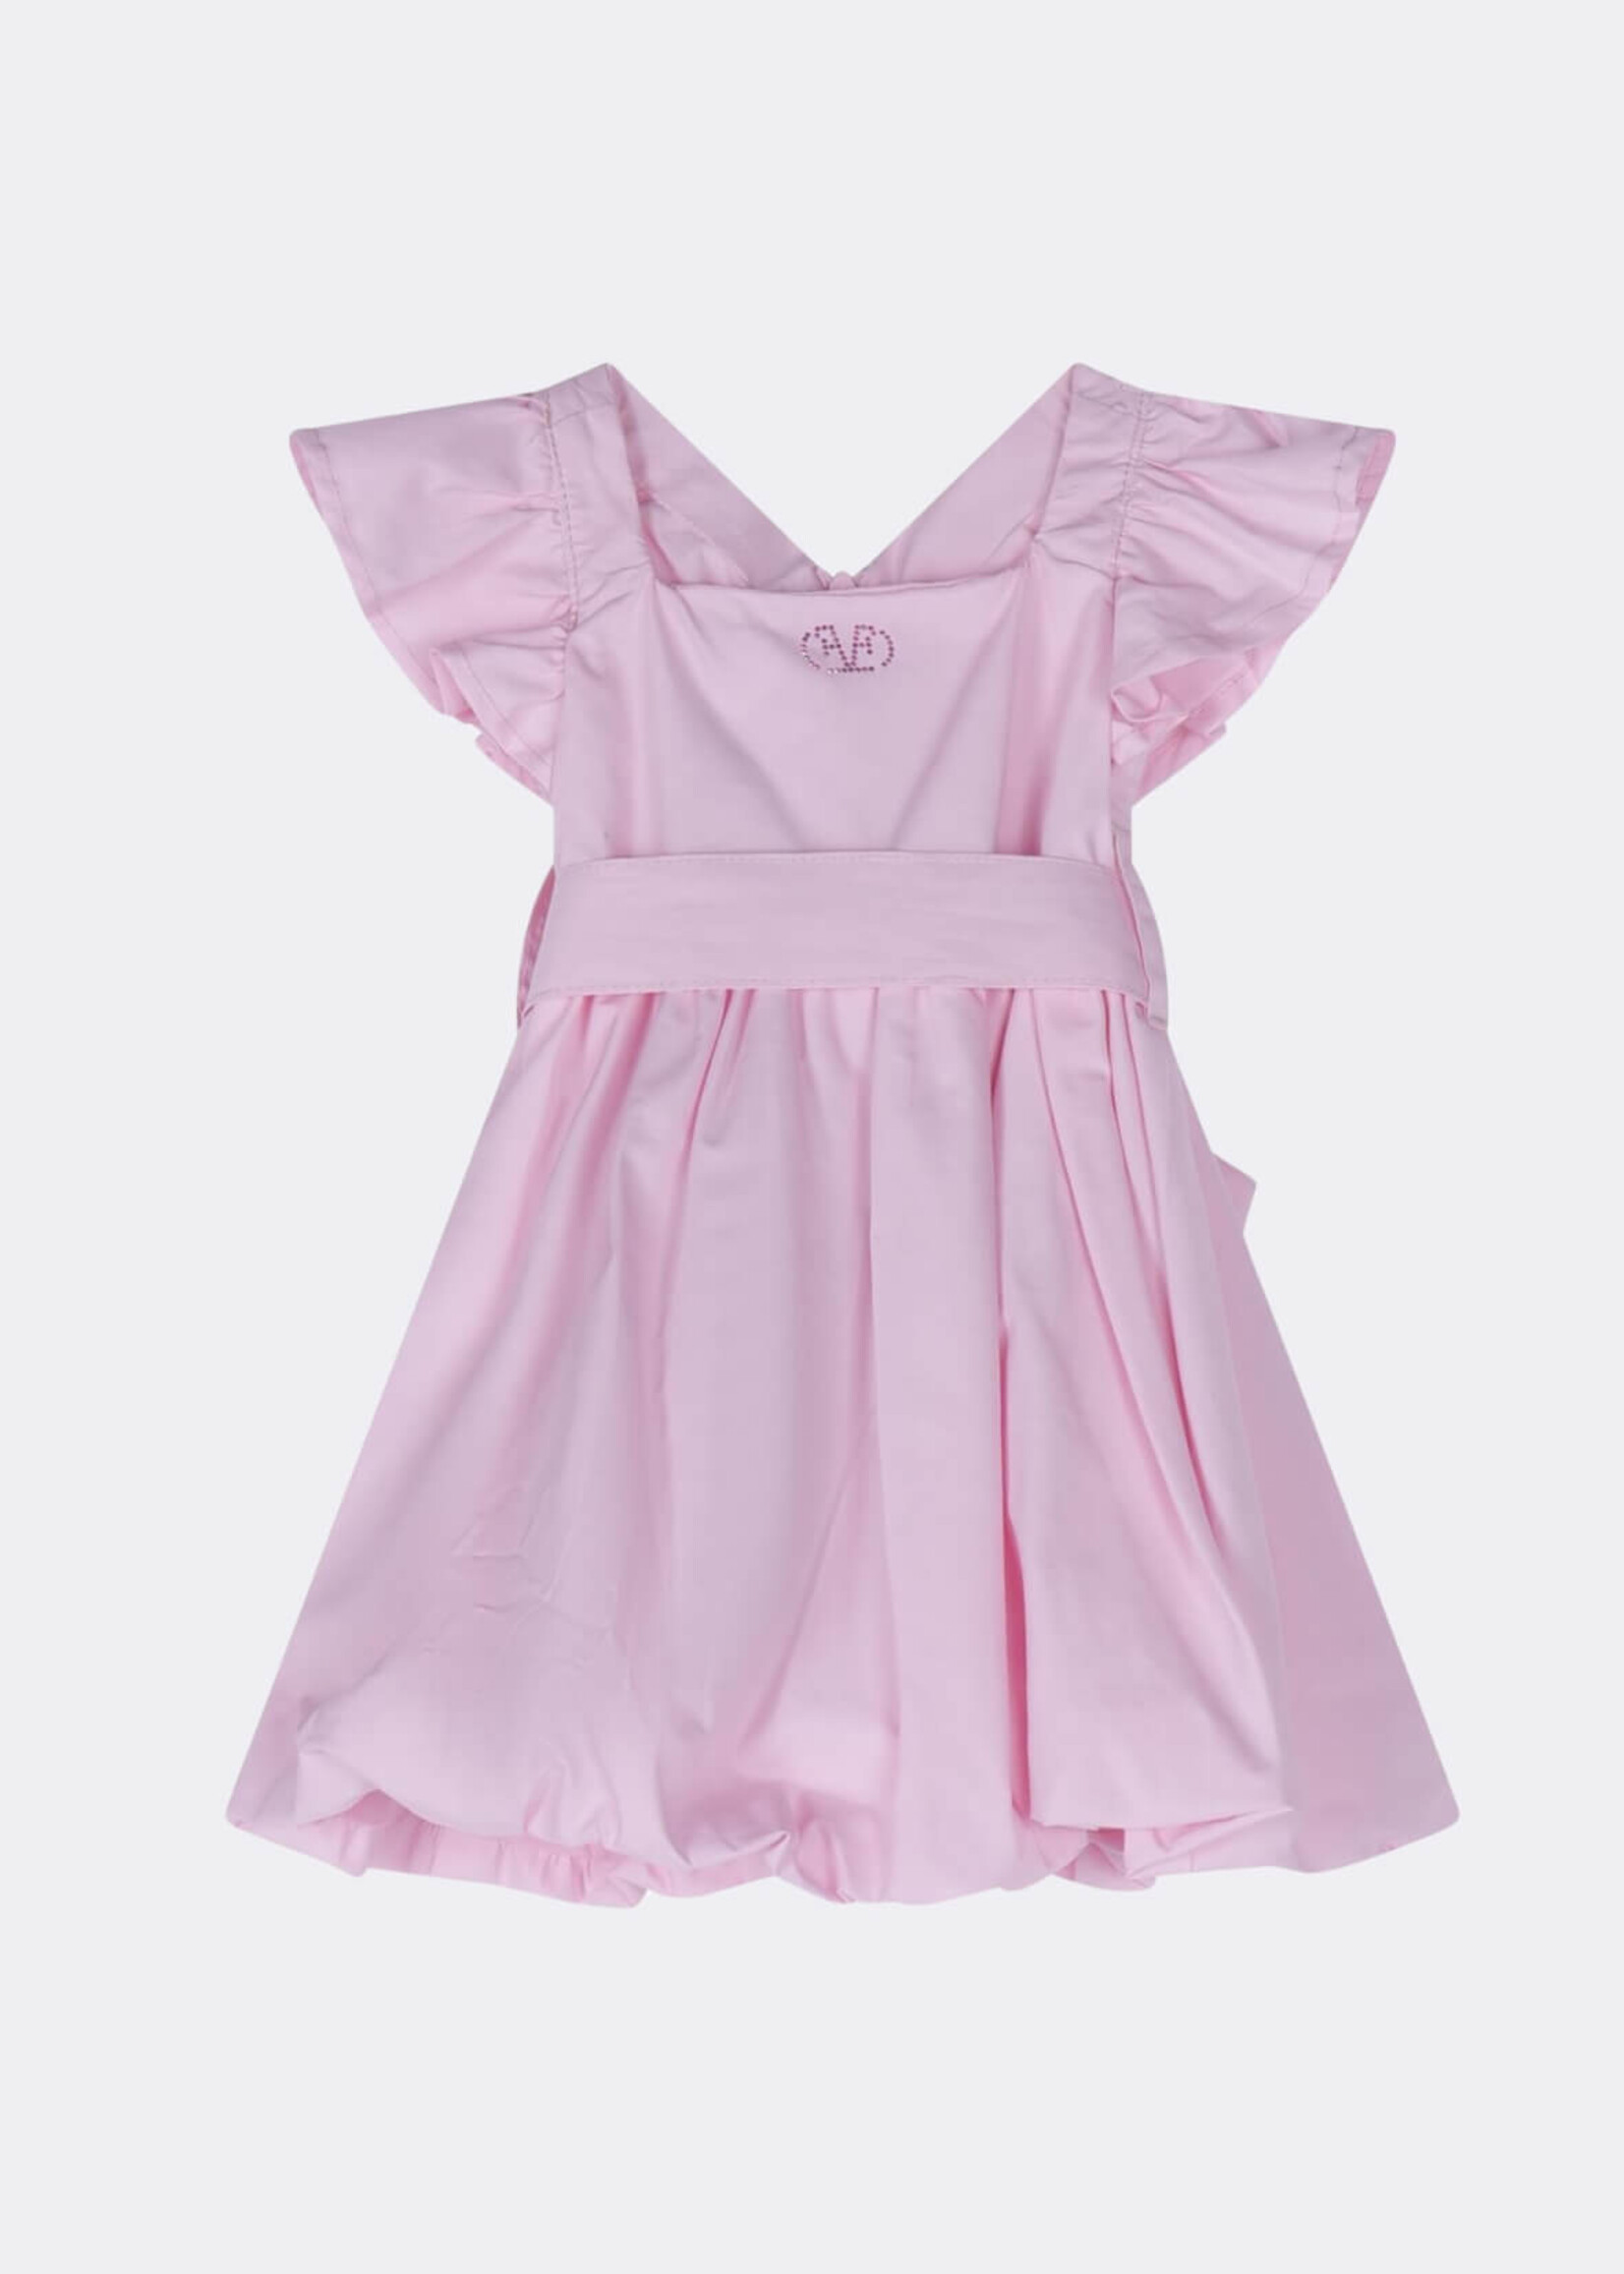 Fun & Fun Pink Dress Baby